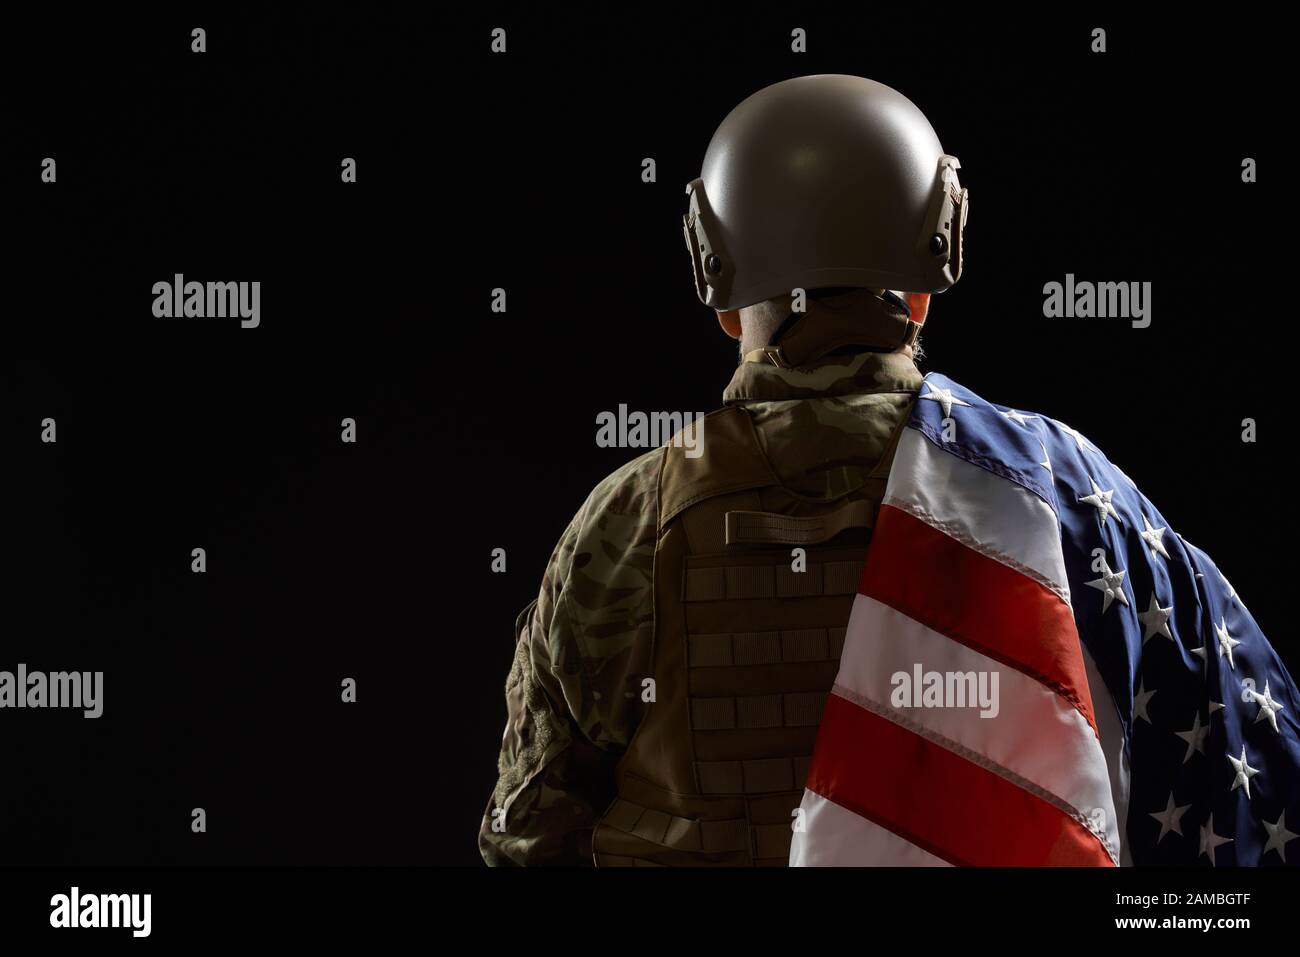 Vista posteriore del veterano militare americano che tiene la bandiera sulla spalla. Ritratto di vecchio ufficiale maschile in incognito in uniforme camouflage posa in un'atmosfera buia. Concetto di militare, esercito. Foto Stock